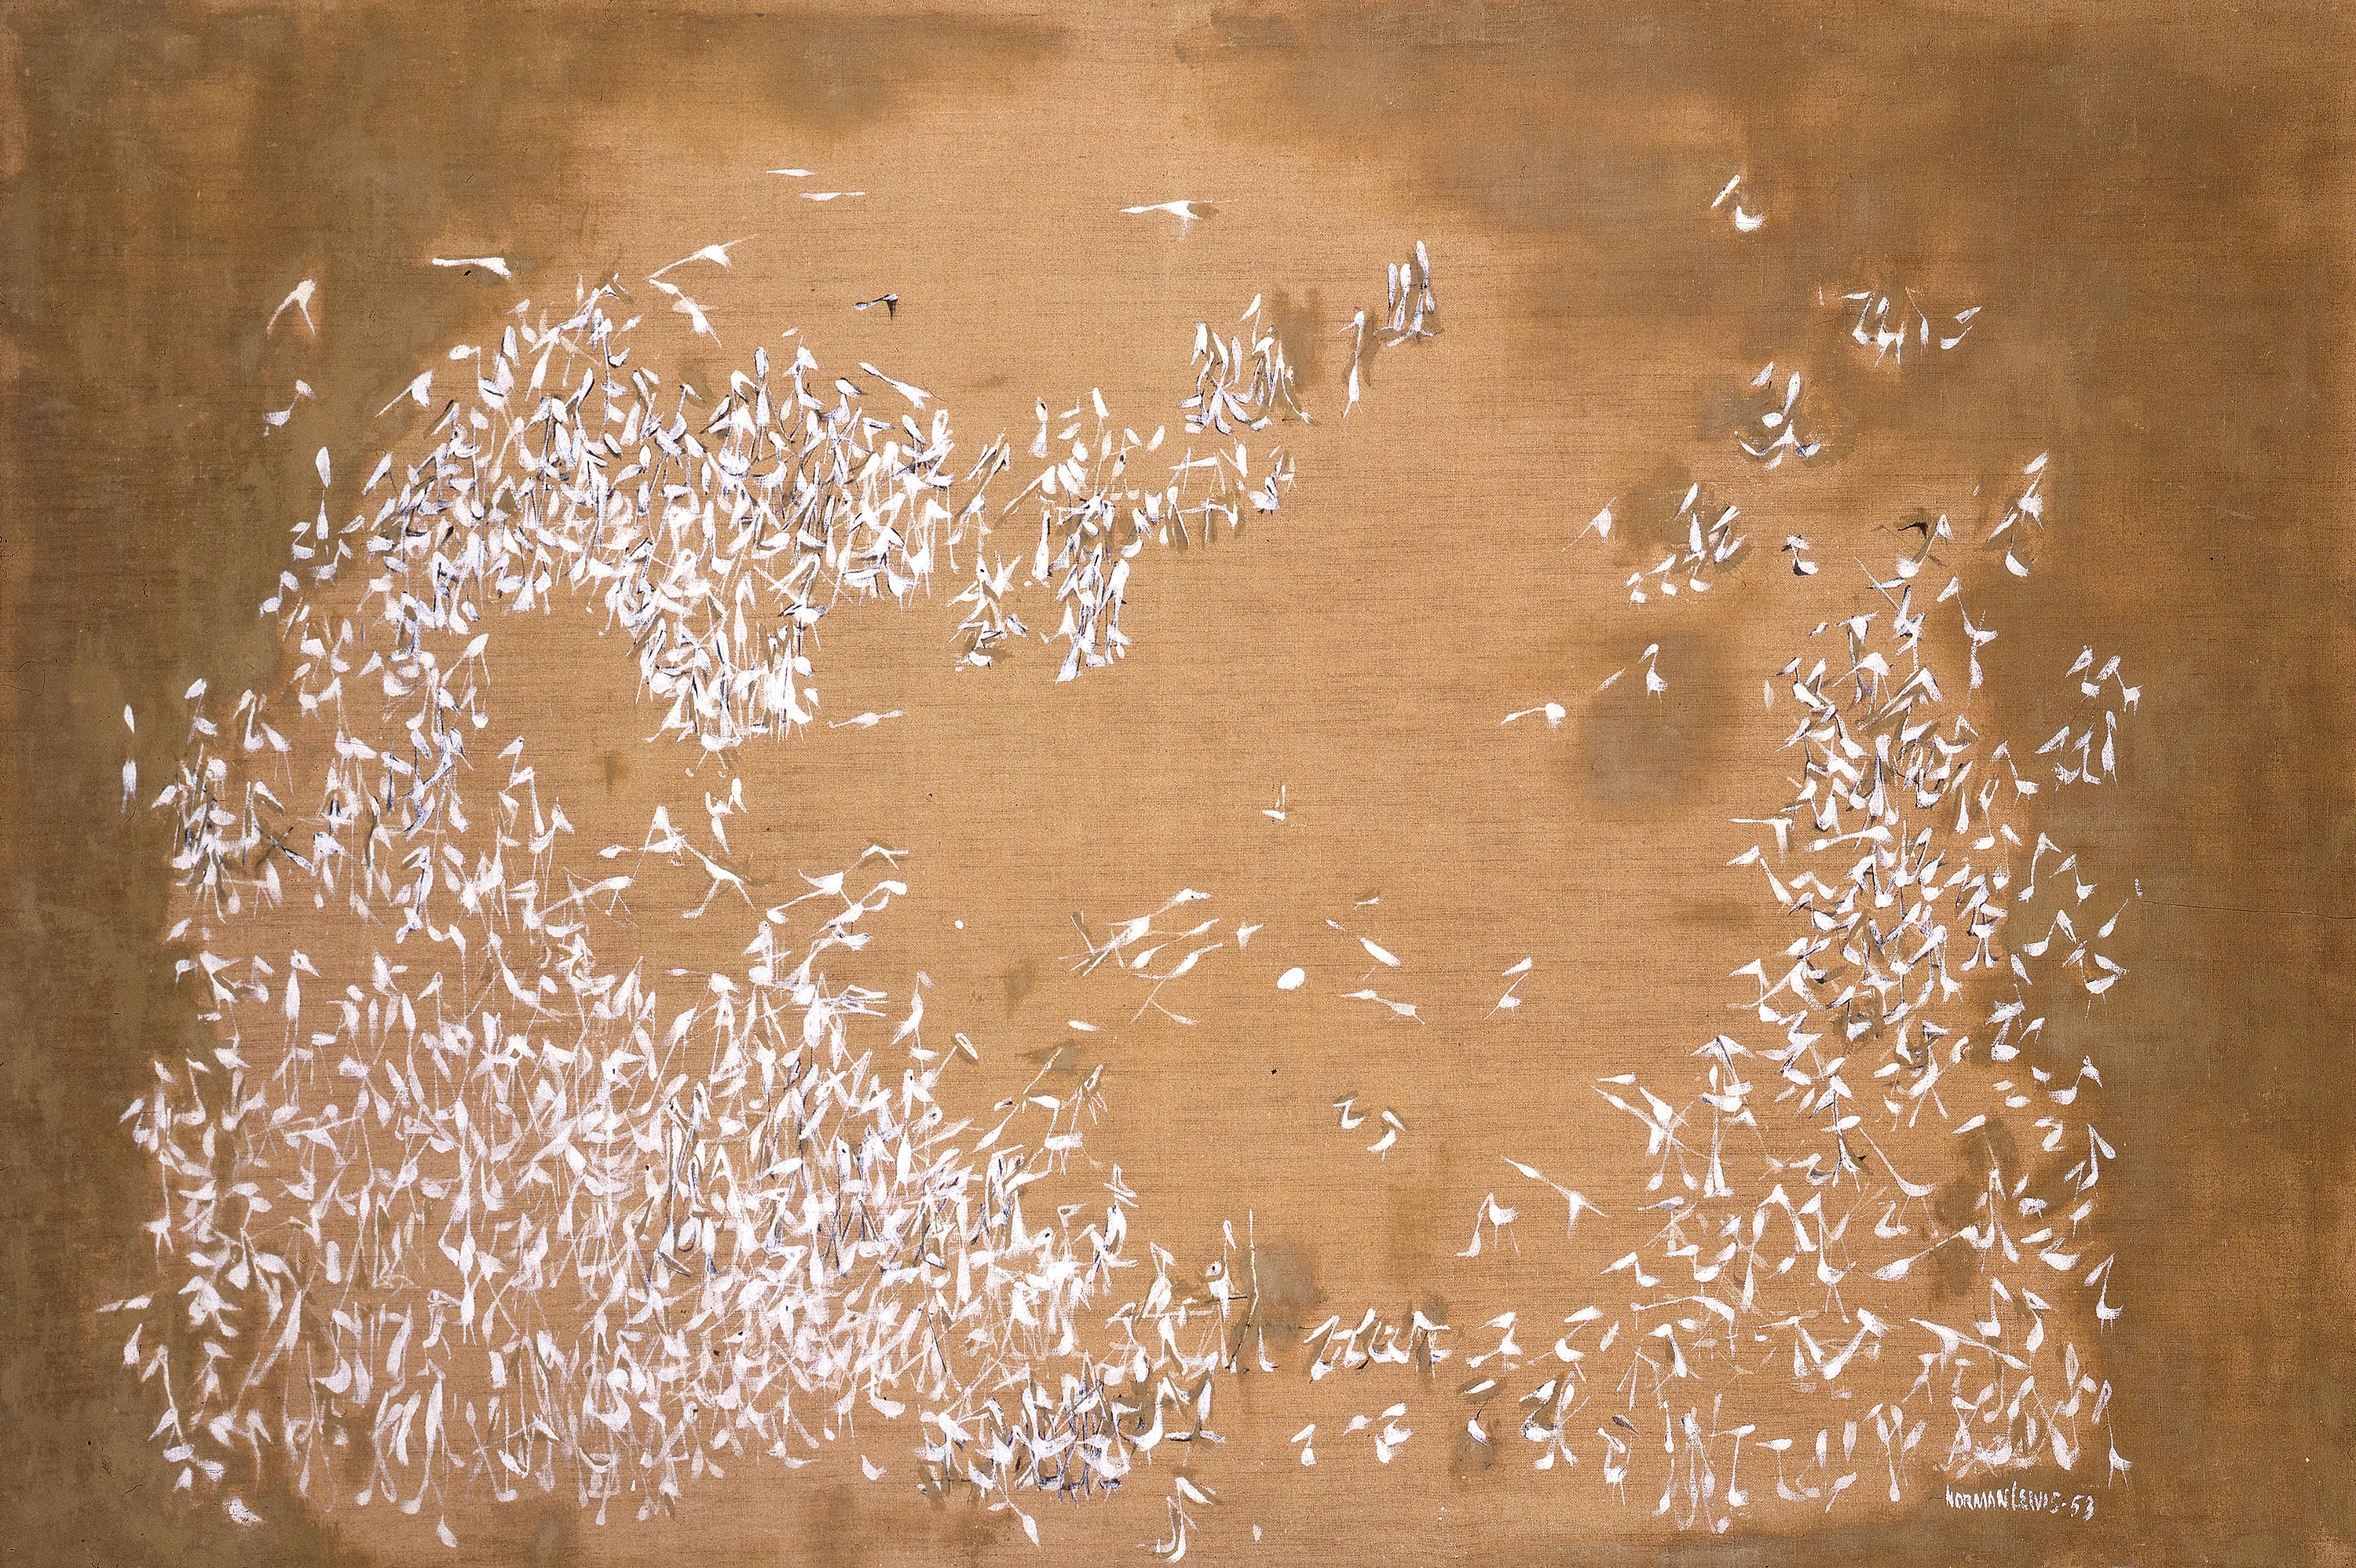 Migrating Birds, Norman Lewis